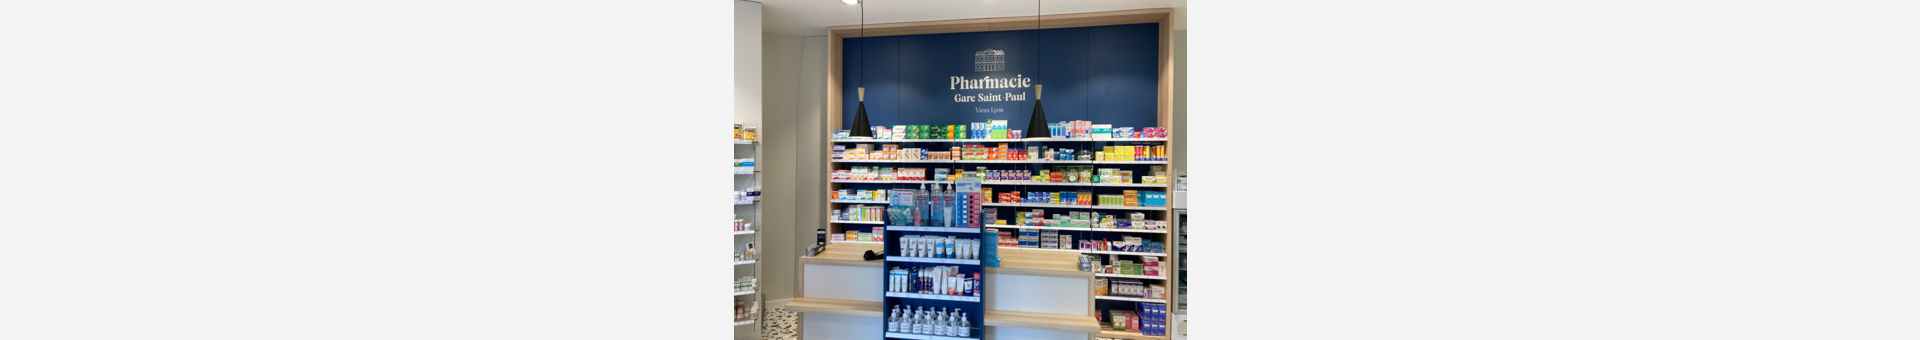 Pharmacie Gare Saint Paul,Lyon